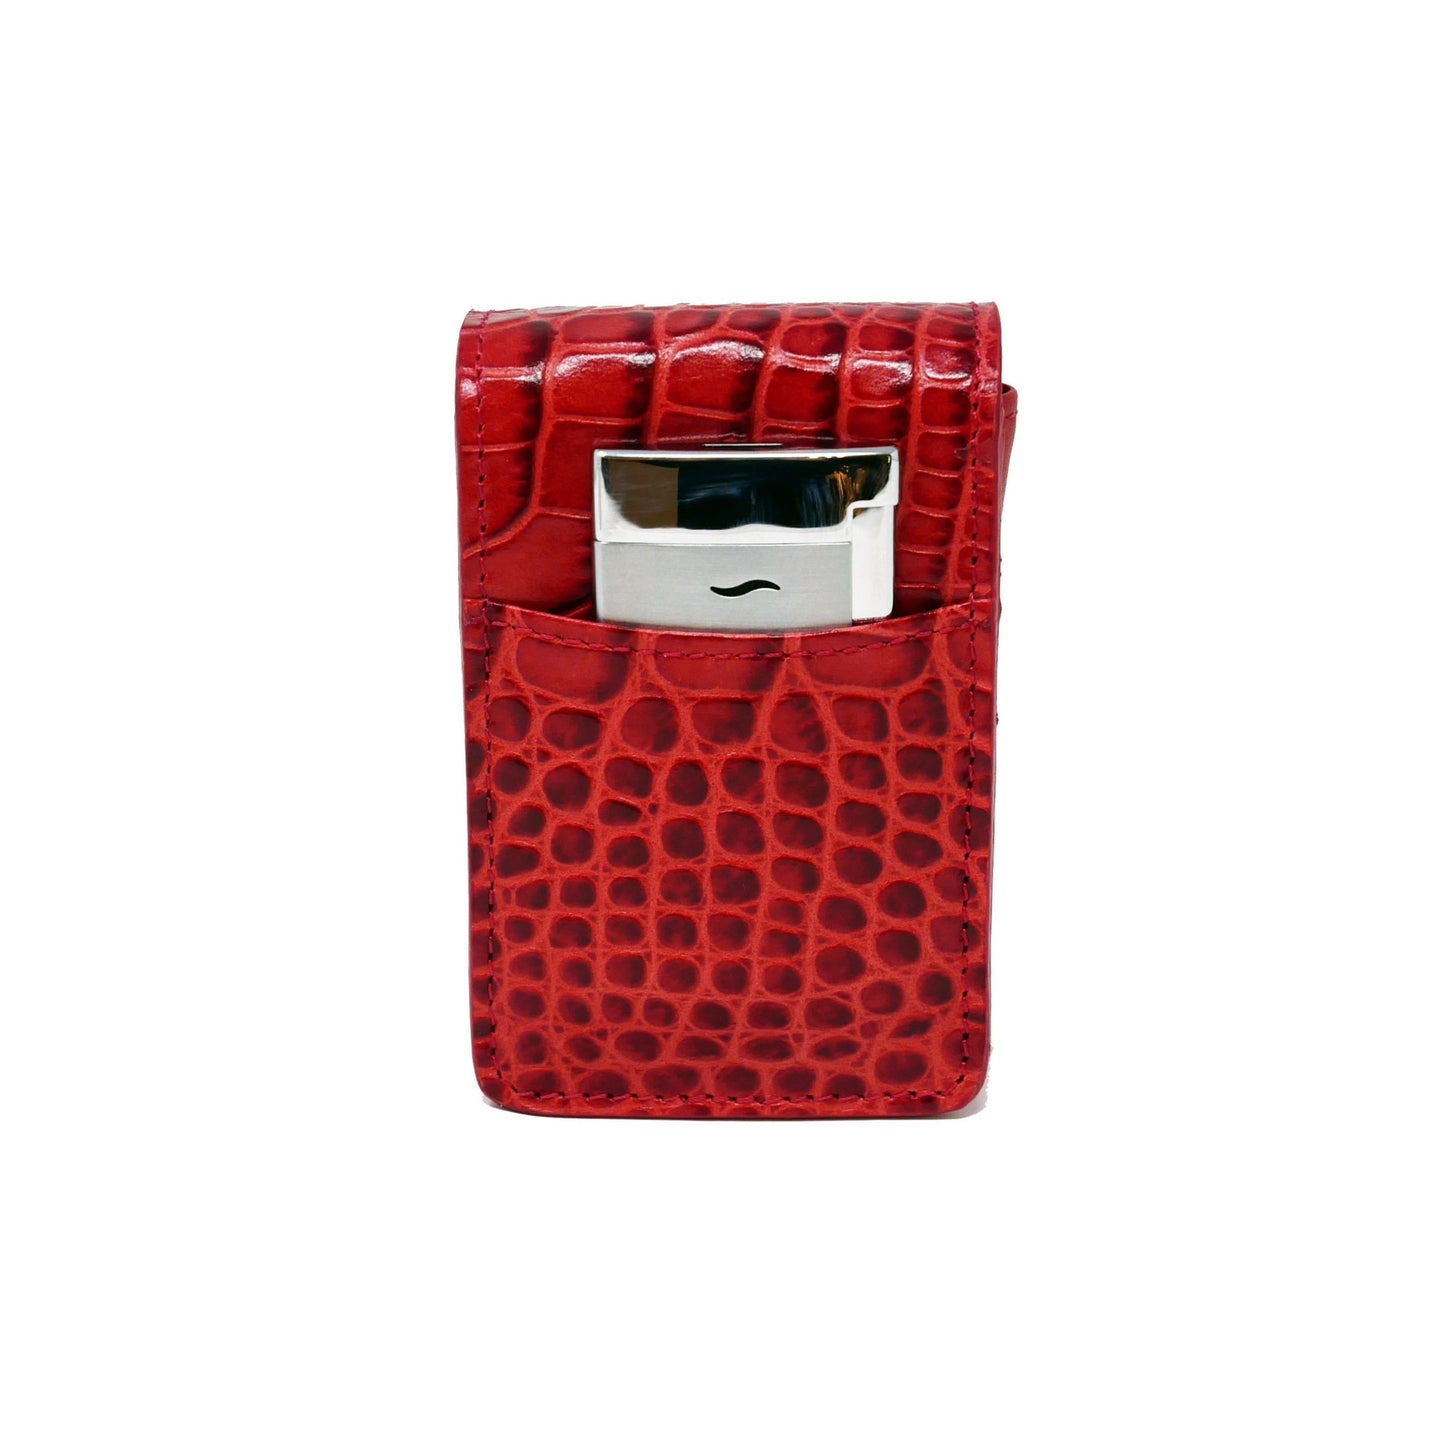 Cigarette Case - Red Crocodile